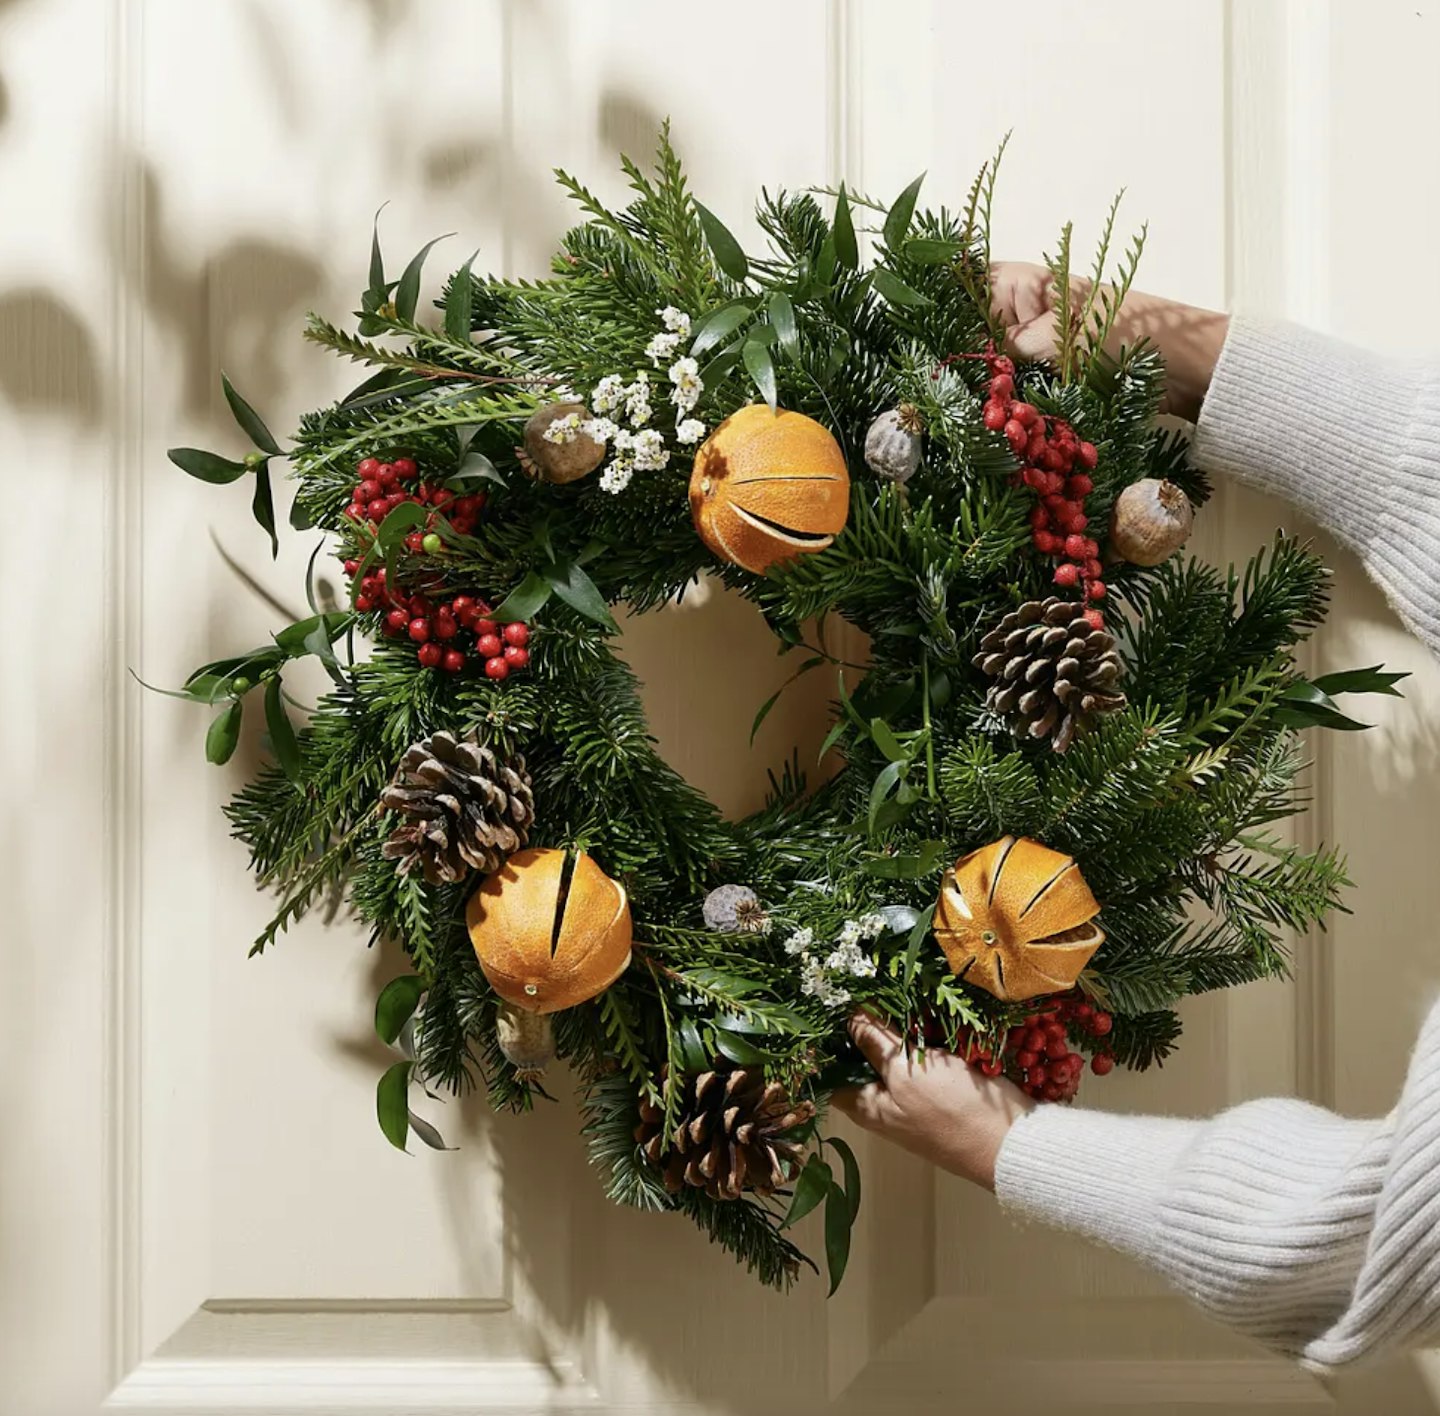 The Christmas DIY Wreath